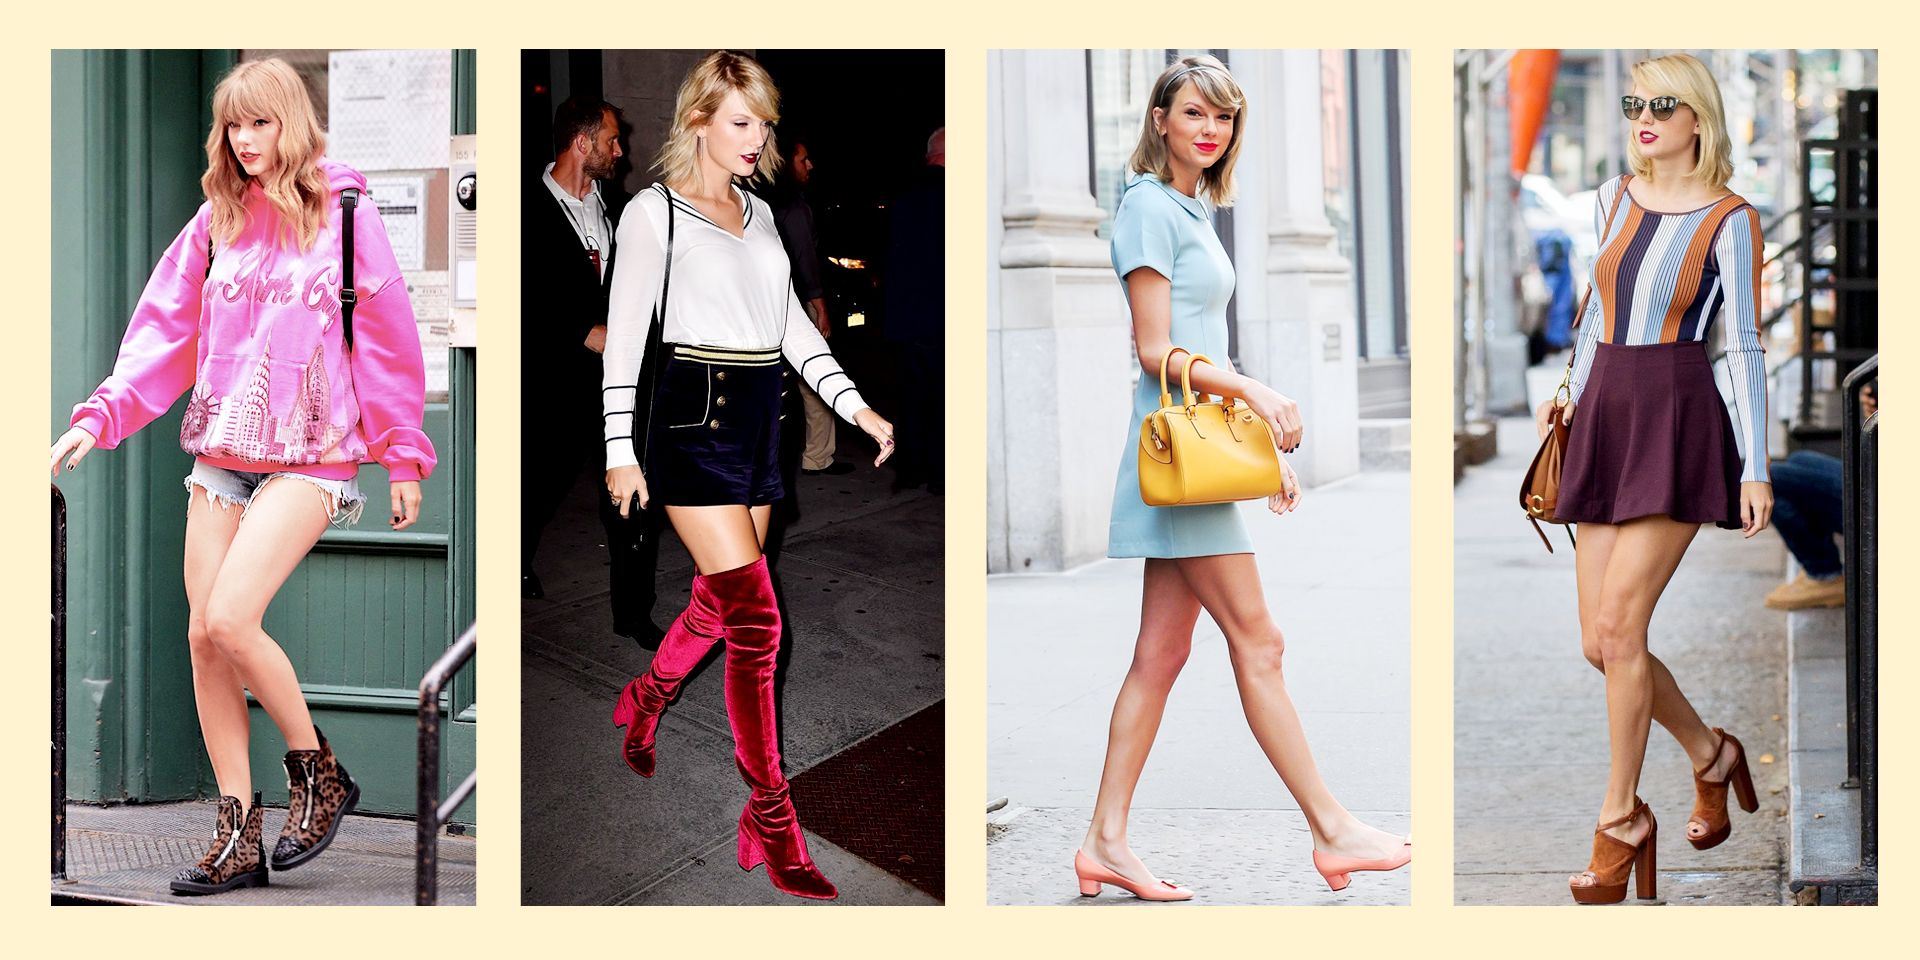 Taylor Swift Dress Alike